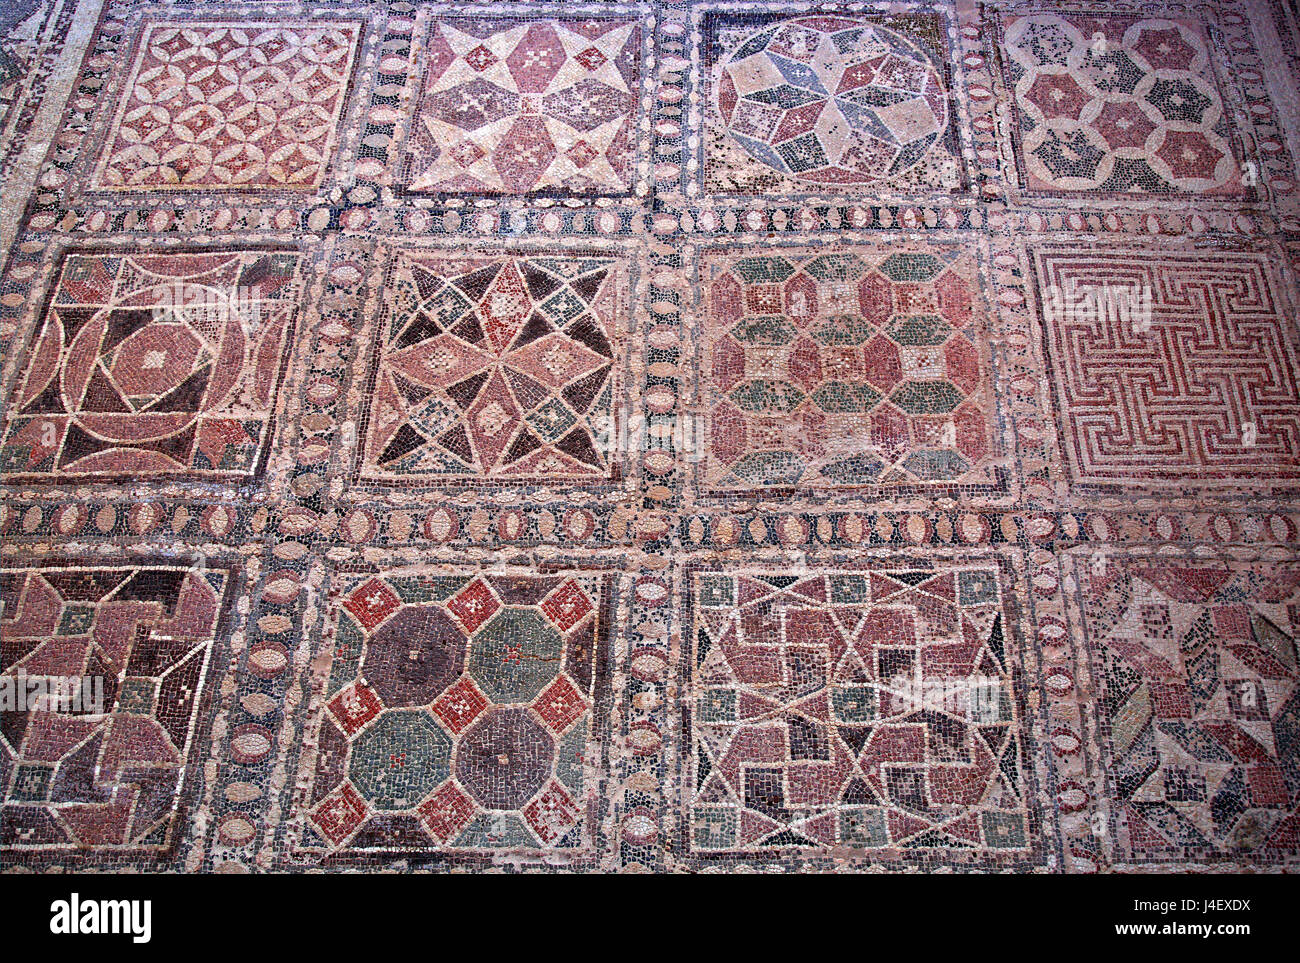 Un mosaico geometrico pianale all'interno della "Casa di Dioniso' nel Parco Archaeoological di Paphos (Patrimonio Mondiale dell'UNESCO), Cipro Foto Stock